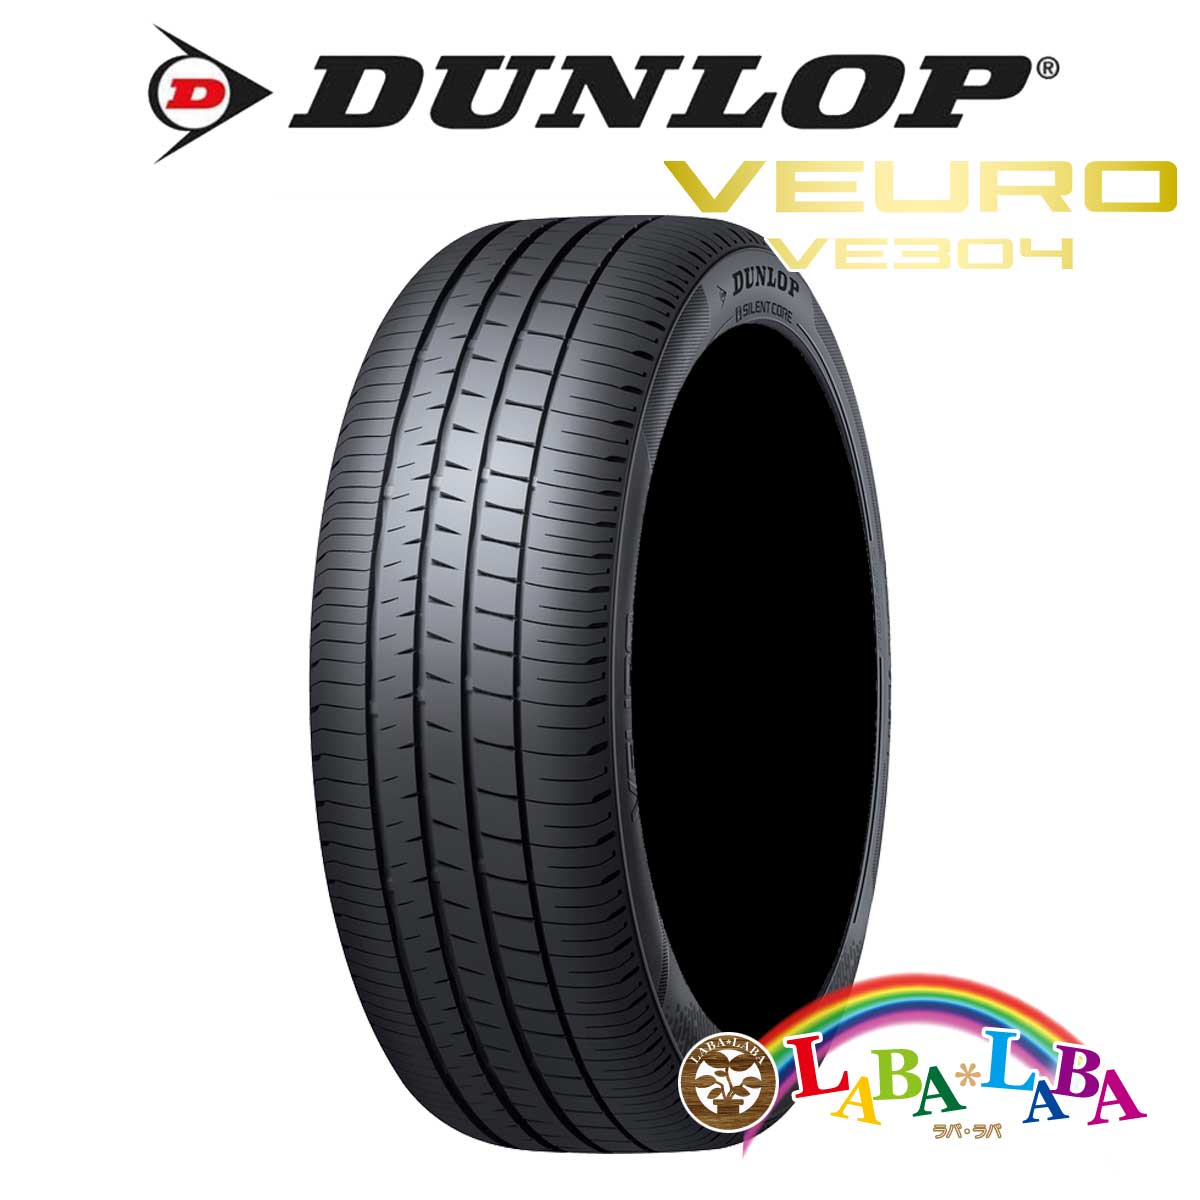 ２本以上送料無料 国産タイヤ サマータイヤ 新品 タイヤのみ DUNLOP ダンロップ 格安 宅配便送料無料 価格でご提供いたします 245 97W XL ビューロ 40R18 VE304 VEURO